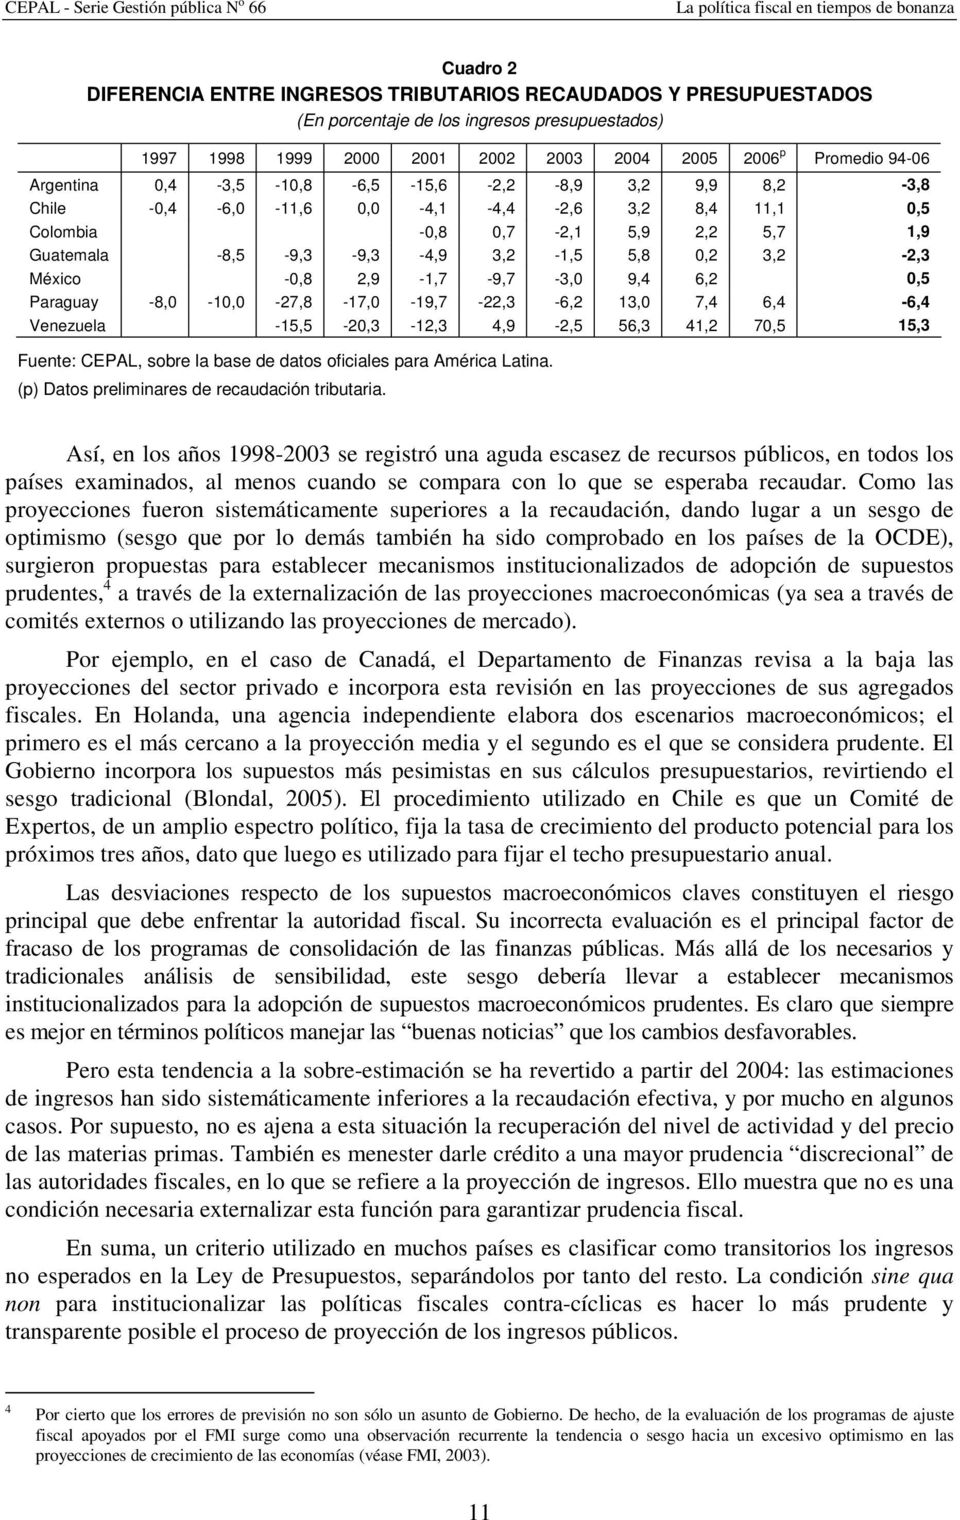 2,9-1,7-9,7-3,0 9,4 6,2 0,5 Paraguay -8,0-10,0-27,8-17,0-19,7-22,3-6,2 13,0 7,4 6,4-6,4 Venezuela -15,5-20,3-12,3 4,9-2,5 56,3 41,2 70,5 15,3 Fuente: CEPAL, sobre la base de datos oficiales para